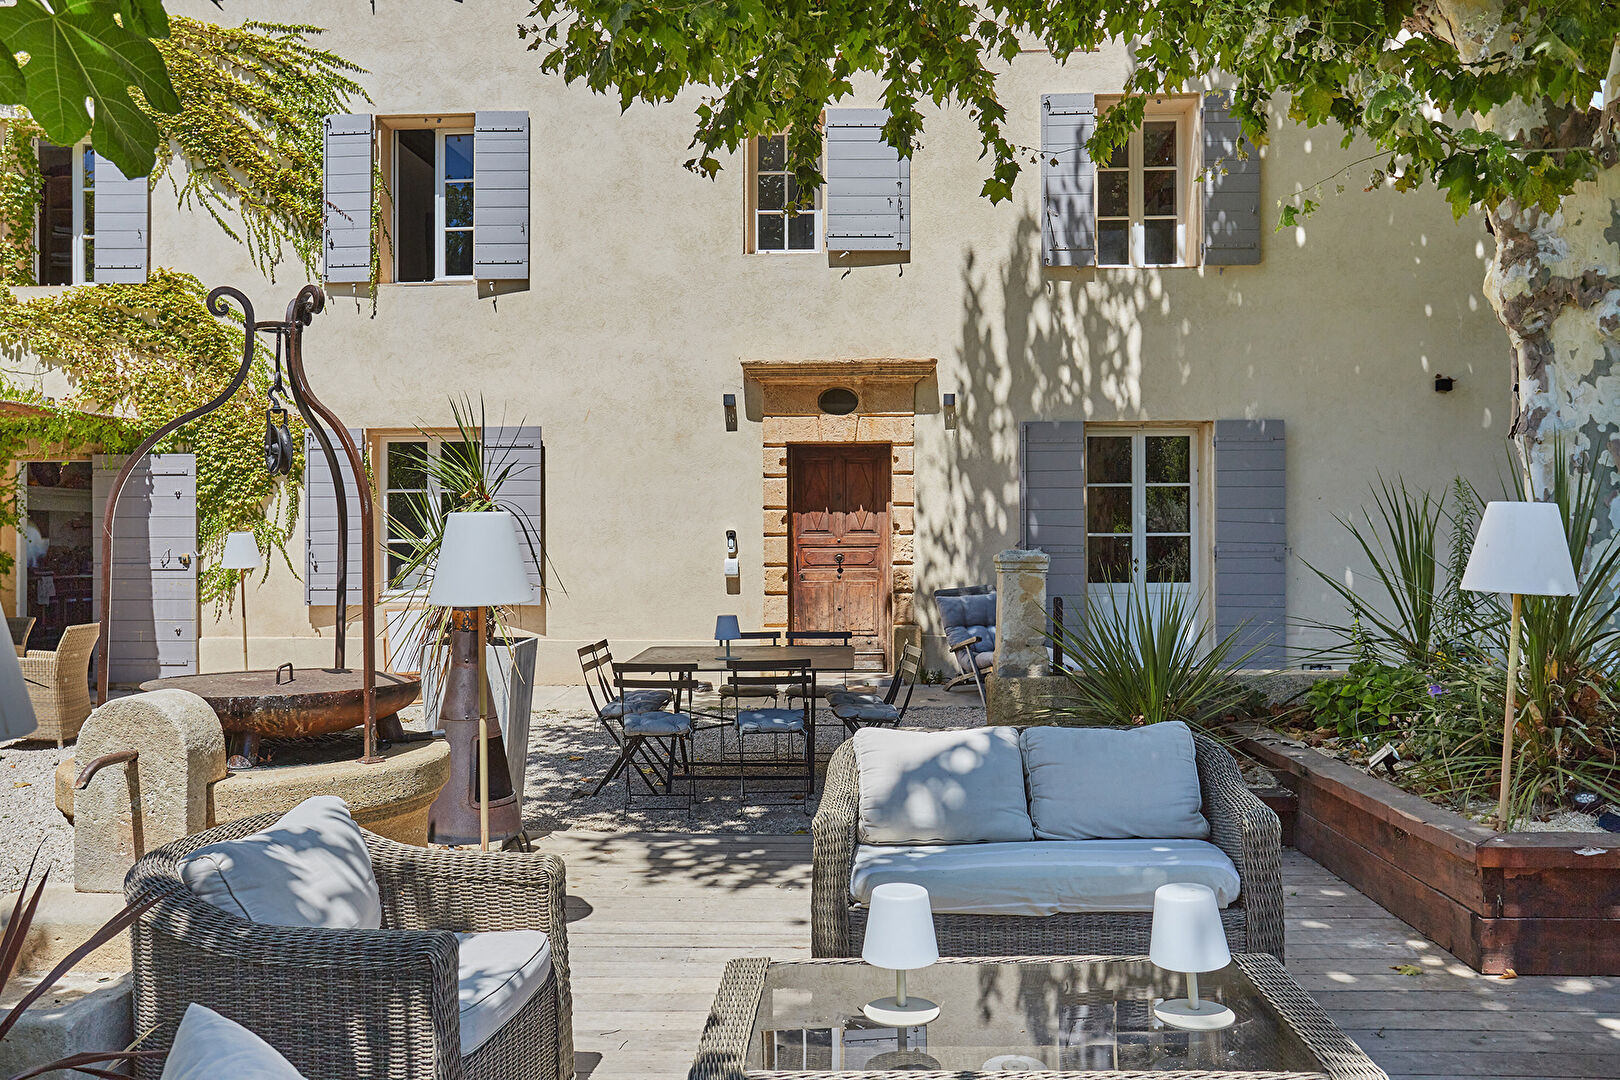 Villa / Maison 8 pièces  à vendre Aix-en-Provence 13090